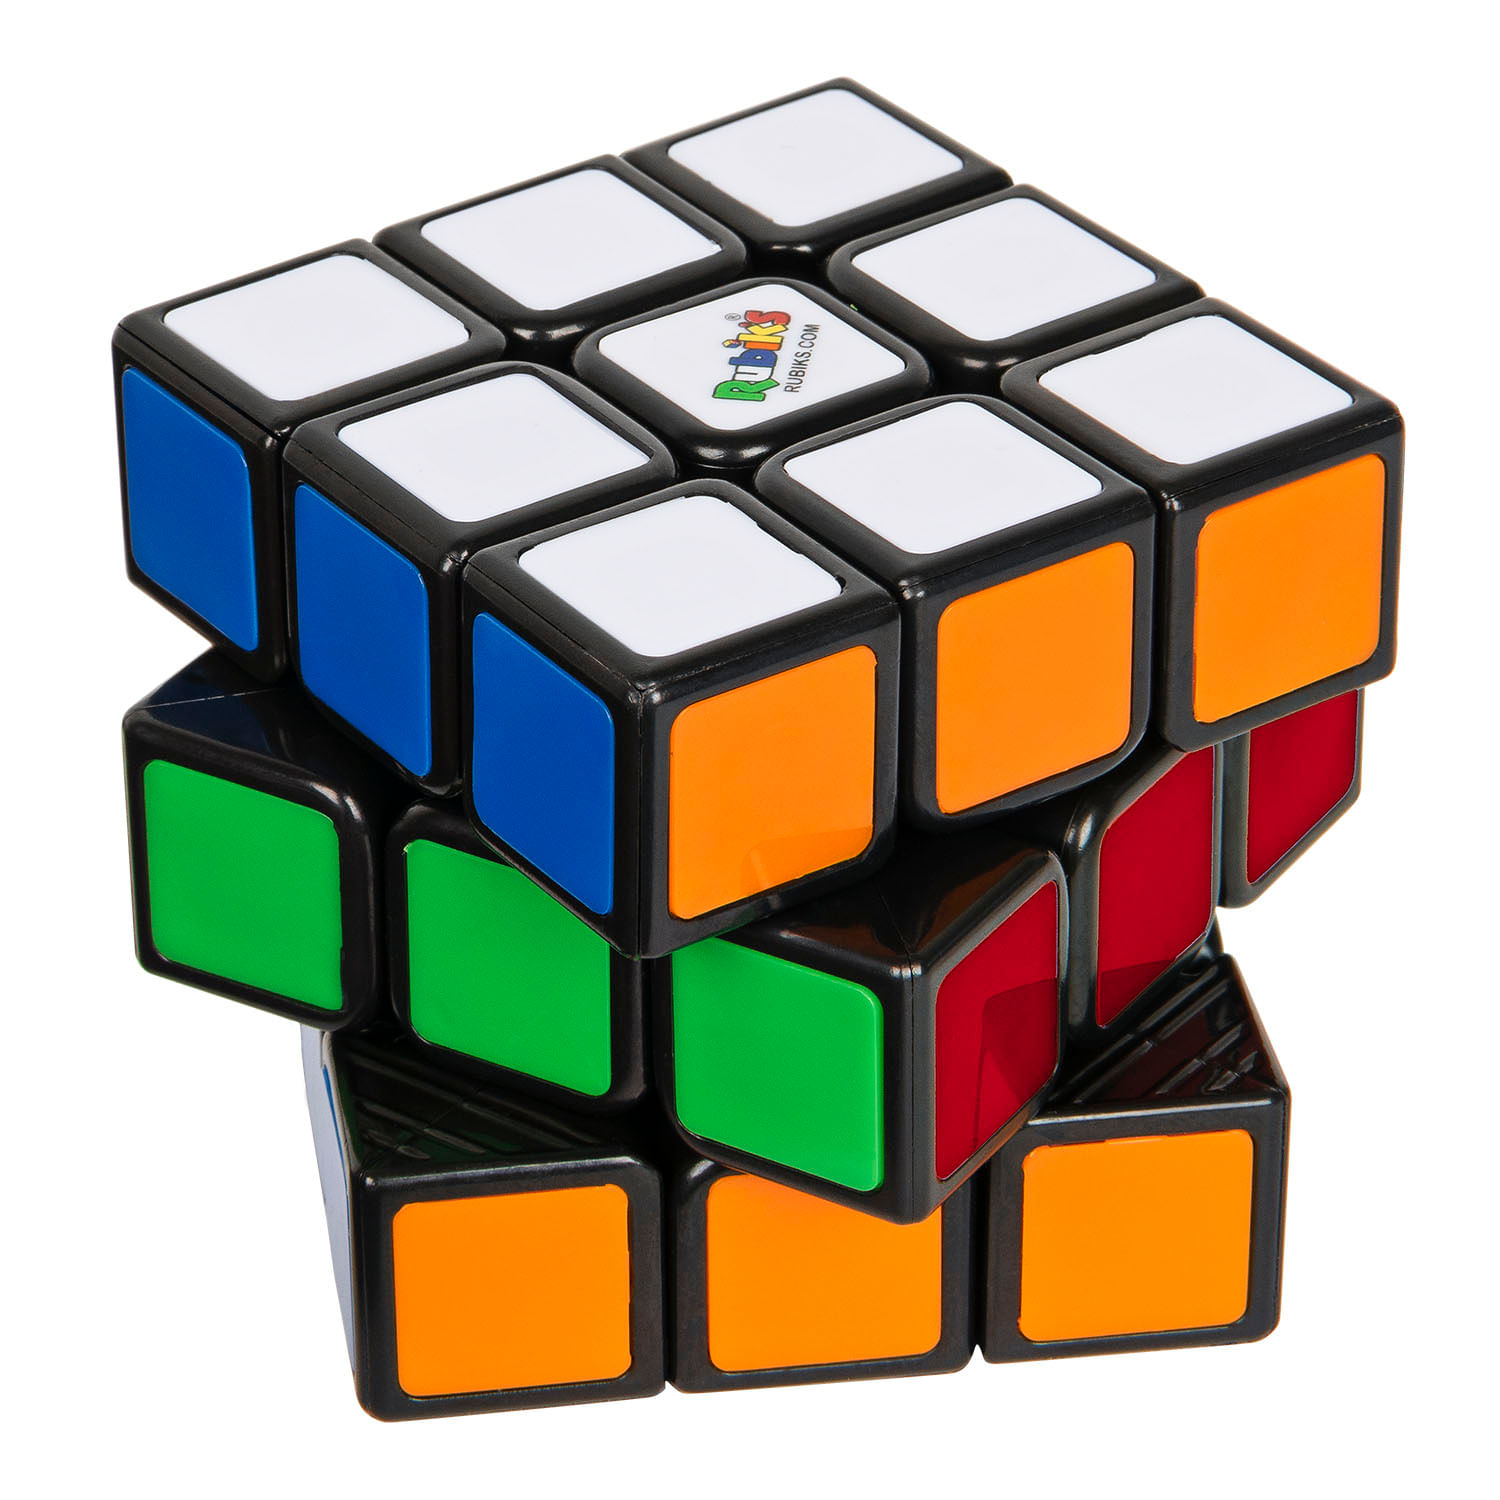 Venta De Cubos Rubik Rubiks Cubo 3X3 | Jumbo.cl